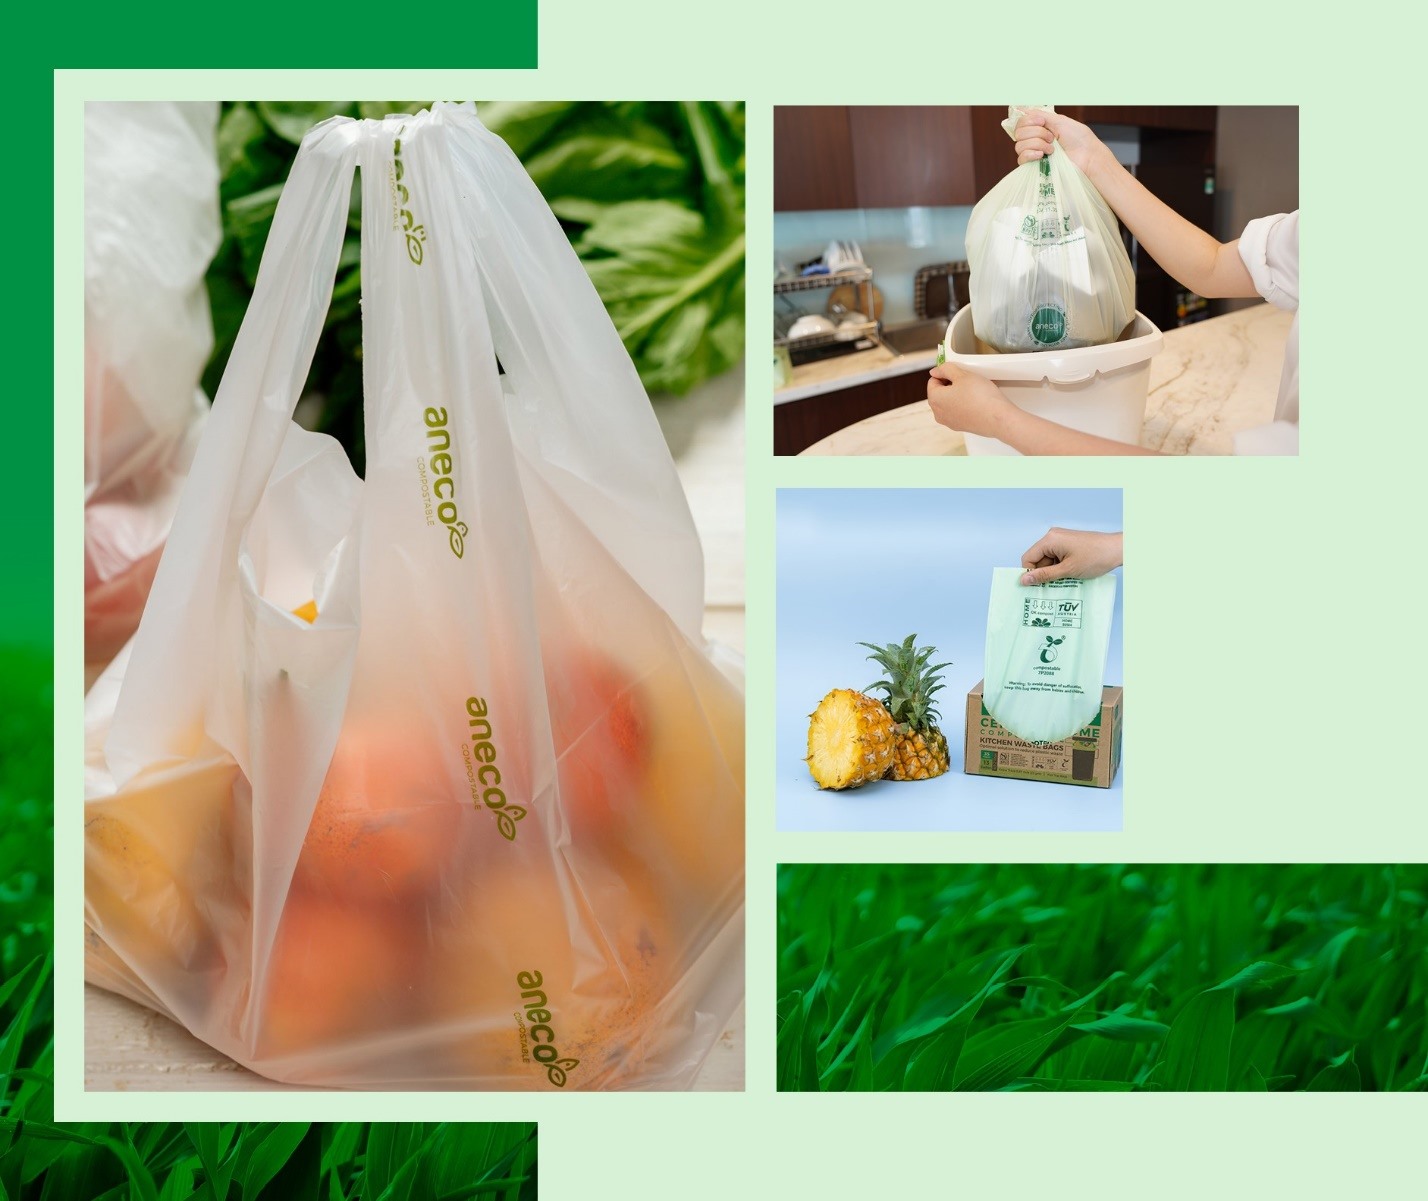 Túi nhựa sinh học phân hủy hoàn toàn AnEco được công nhận là sản phẩm Thương hiệu quốc gia gồm 3 loại: túi đựng thực phẩm, túi shopping và túi rác